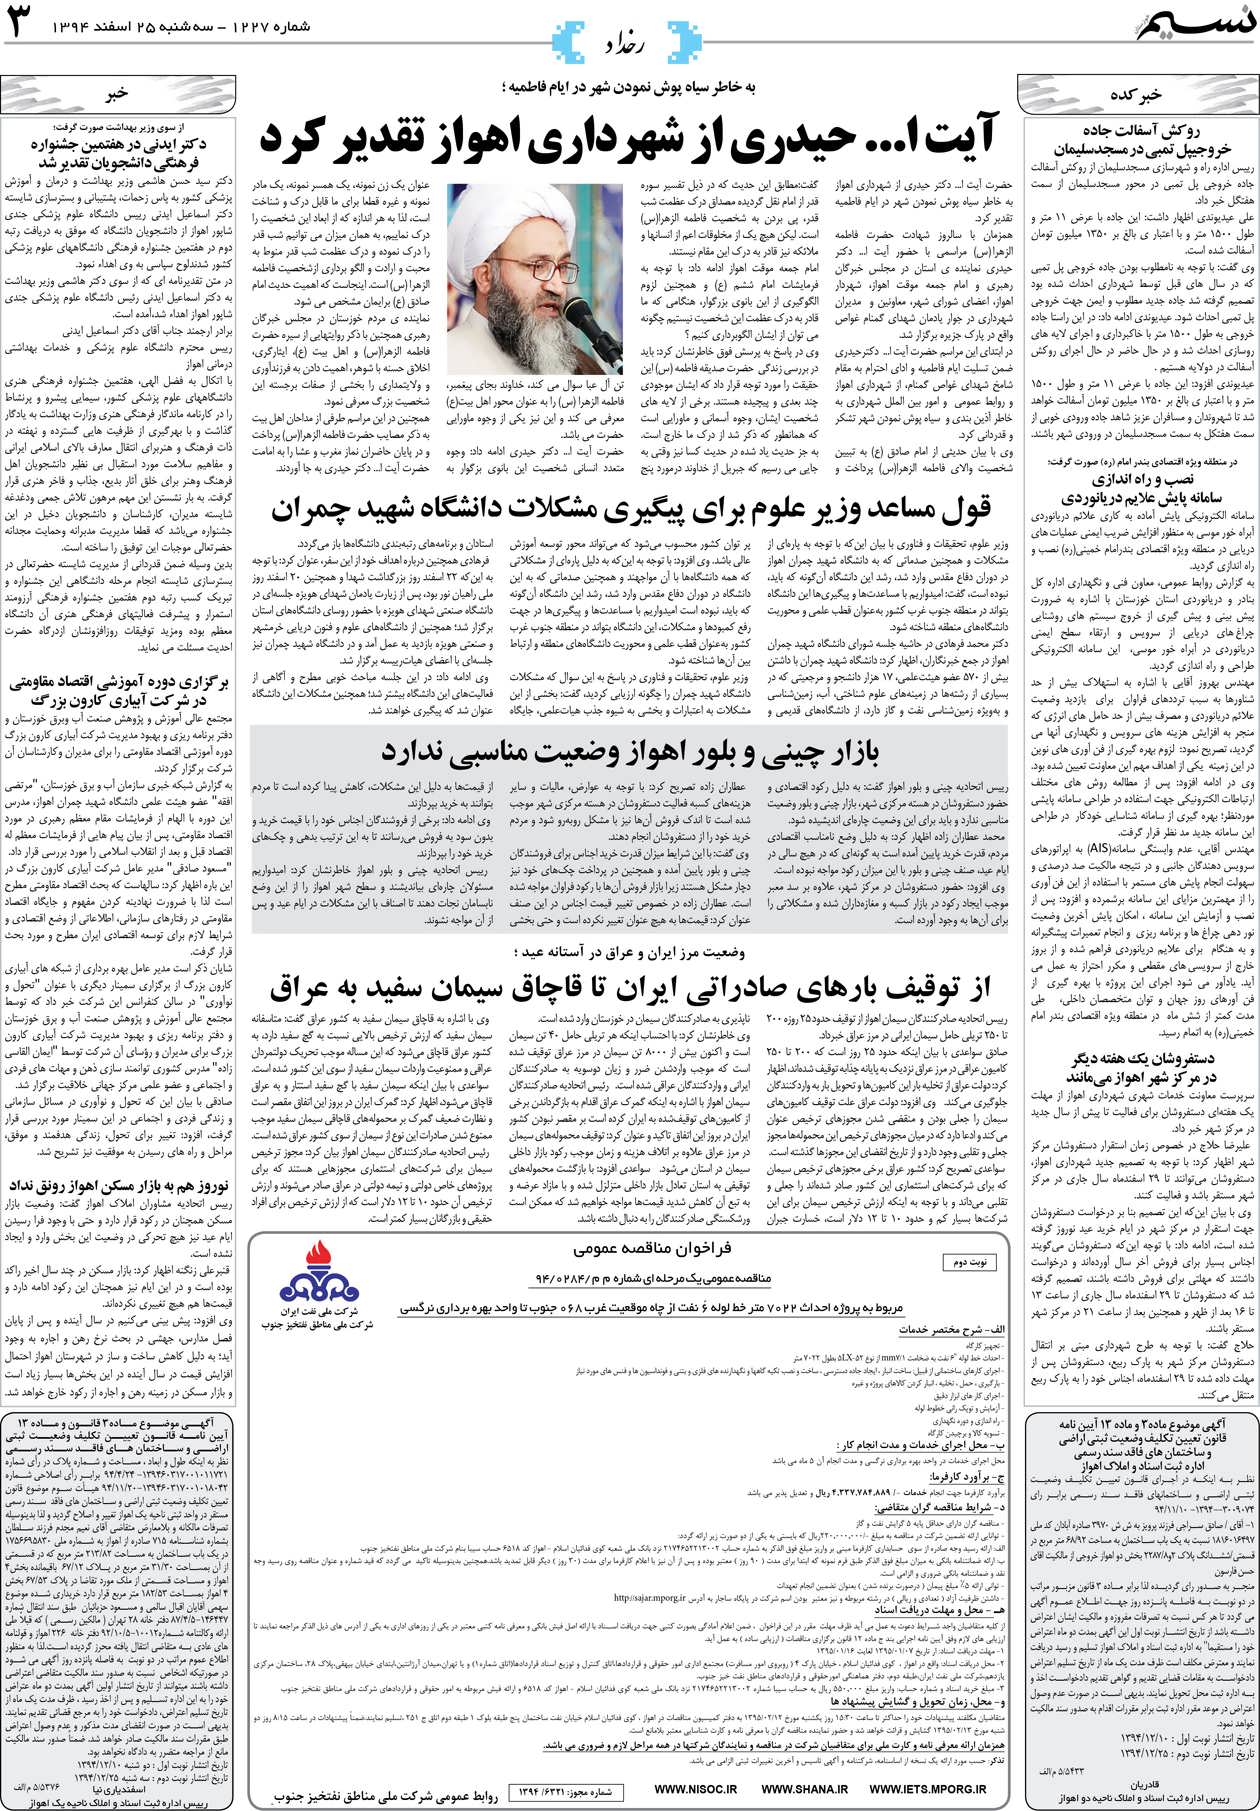 صفحه رخداد روزنامه نسیم شماره 1227